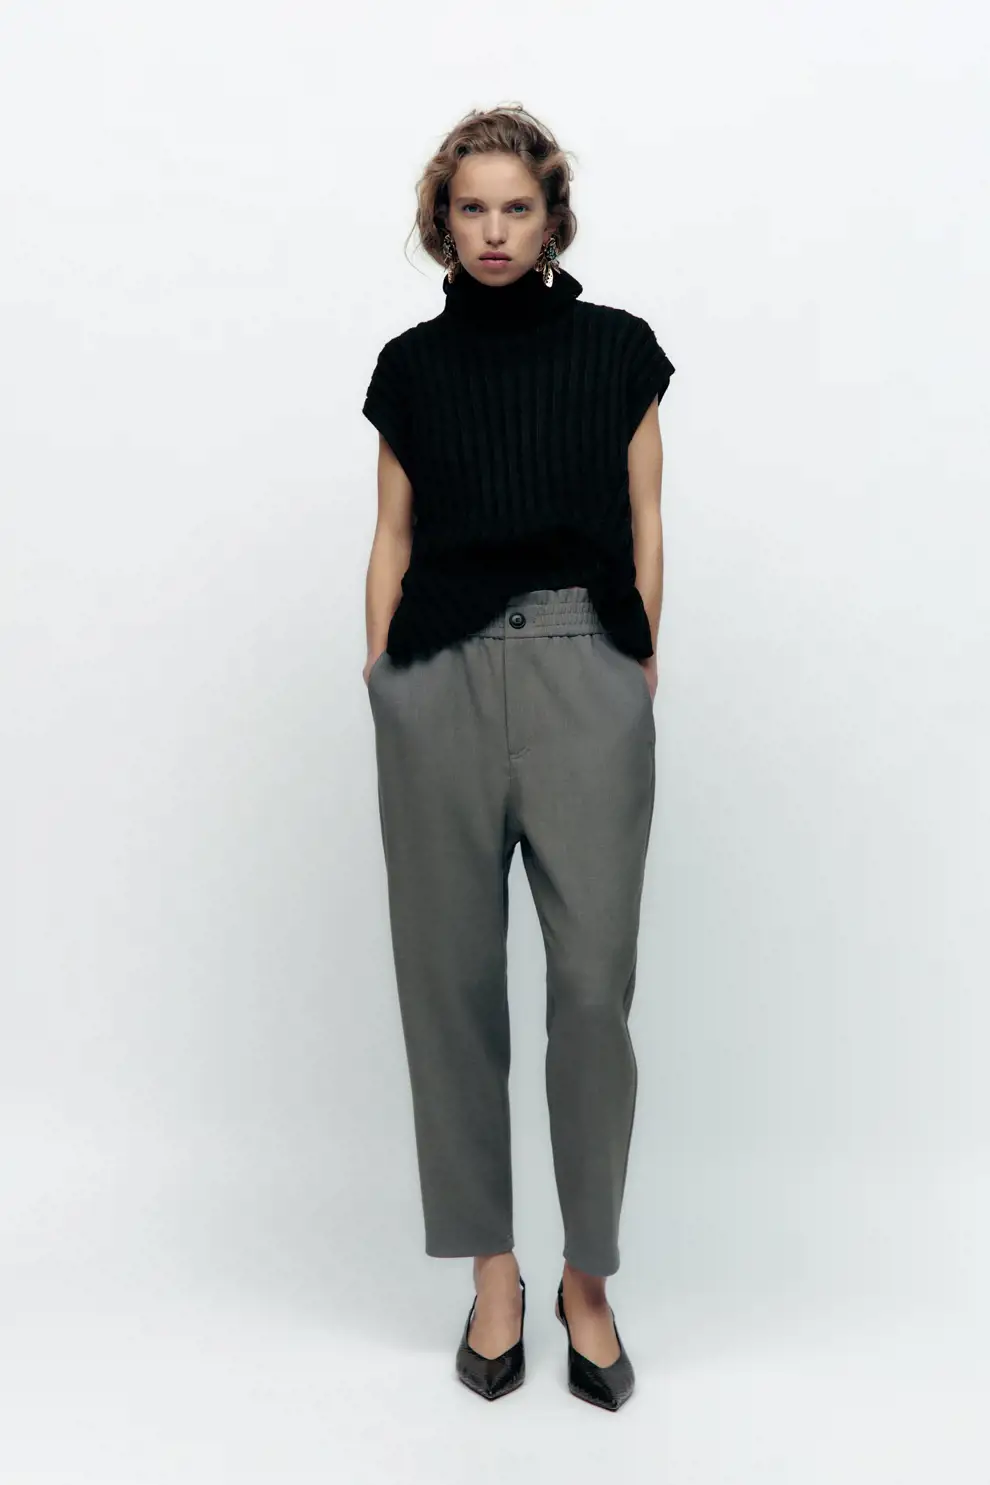 pantalones de Zara que estilizan recto paperbag recto